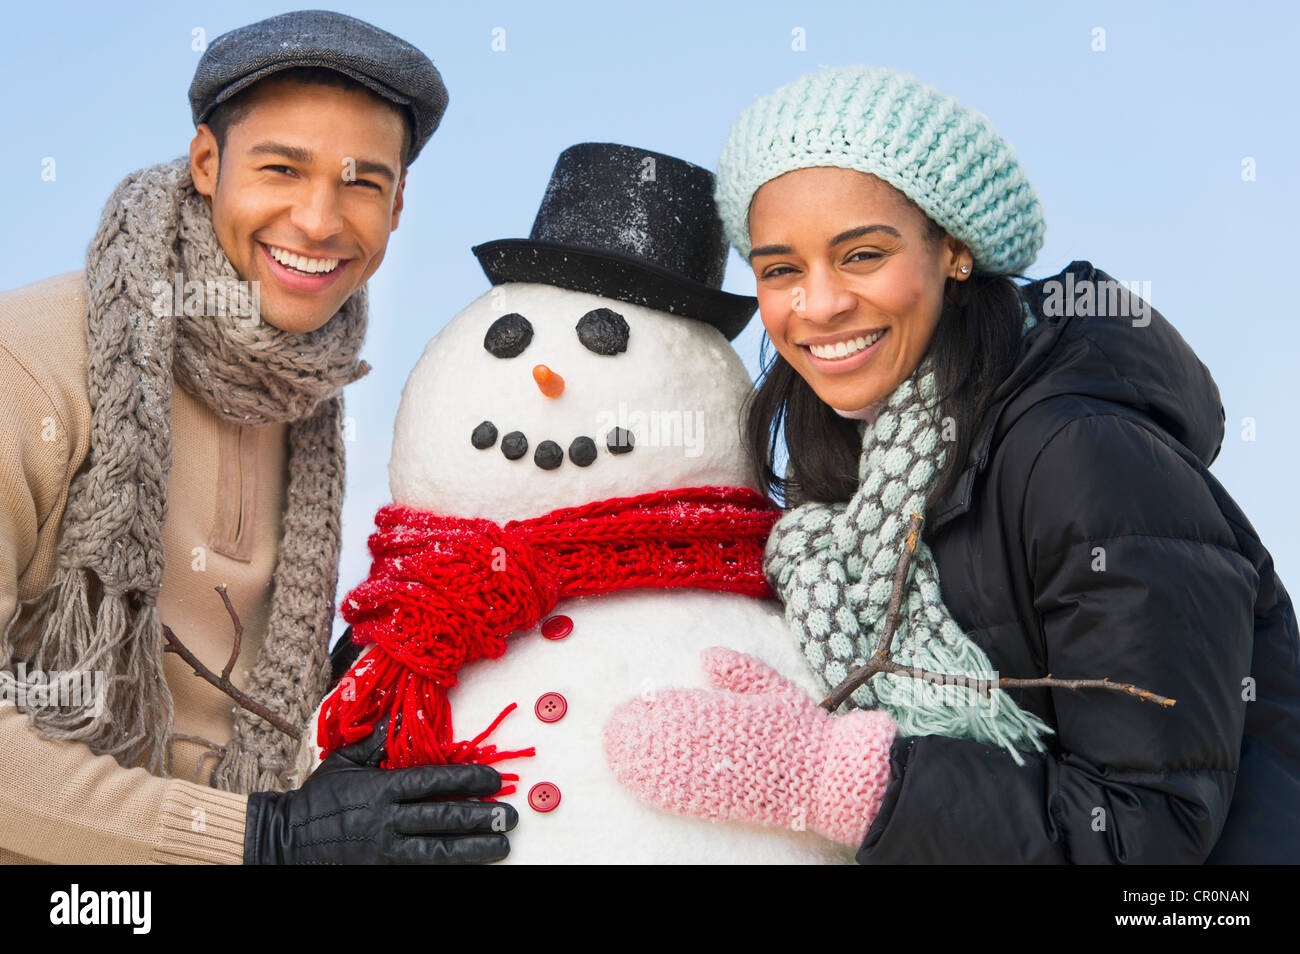 USA, New Jersey, Jersey City, Portrait de couple avec snowman Banque D'Images